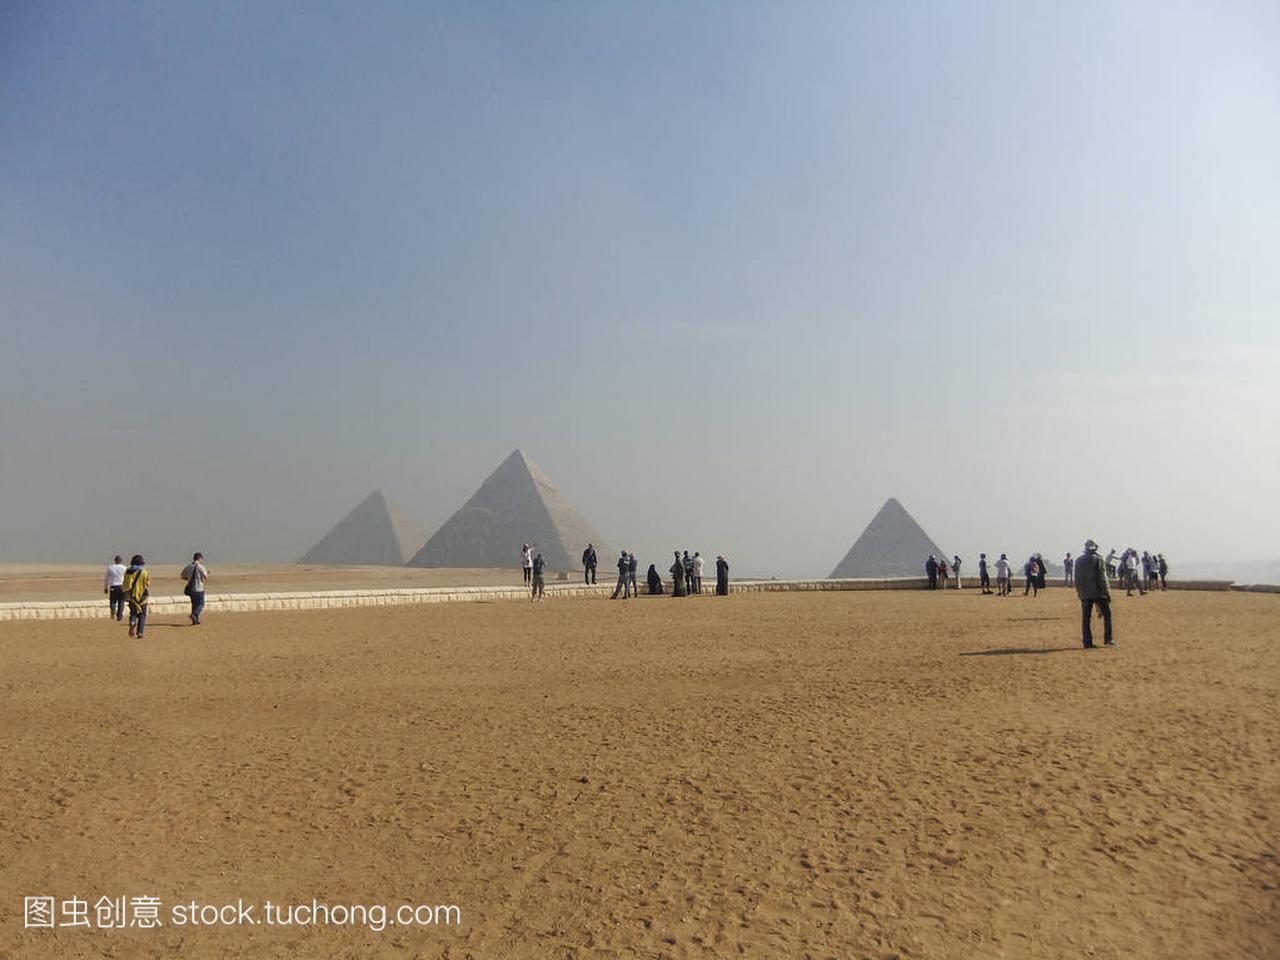 Cairo, Egypt: November 24, 2010: Tourist 